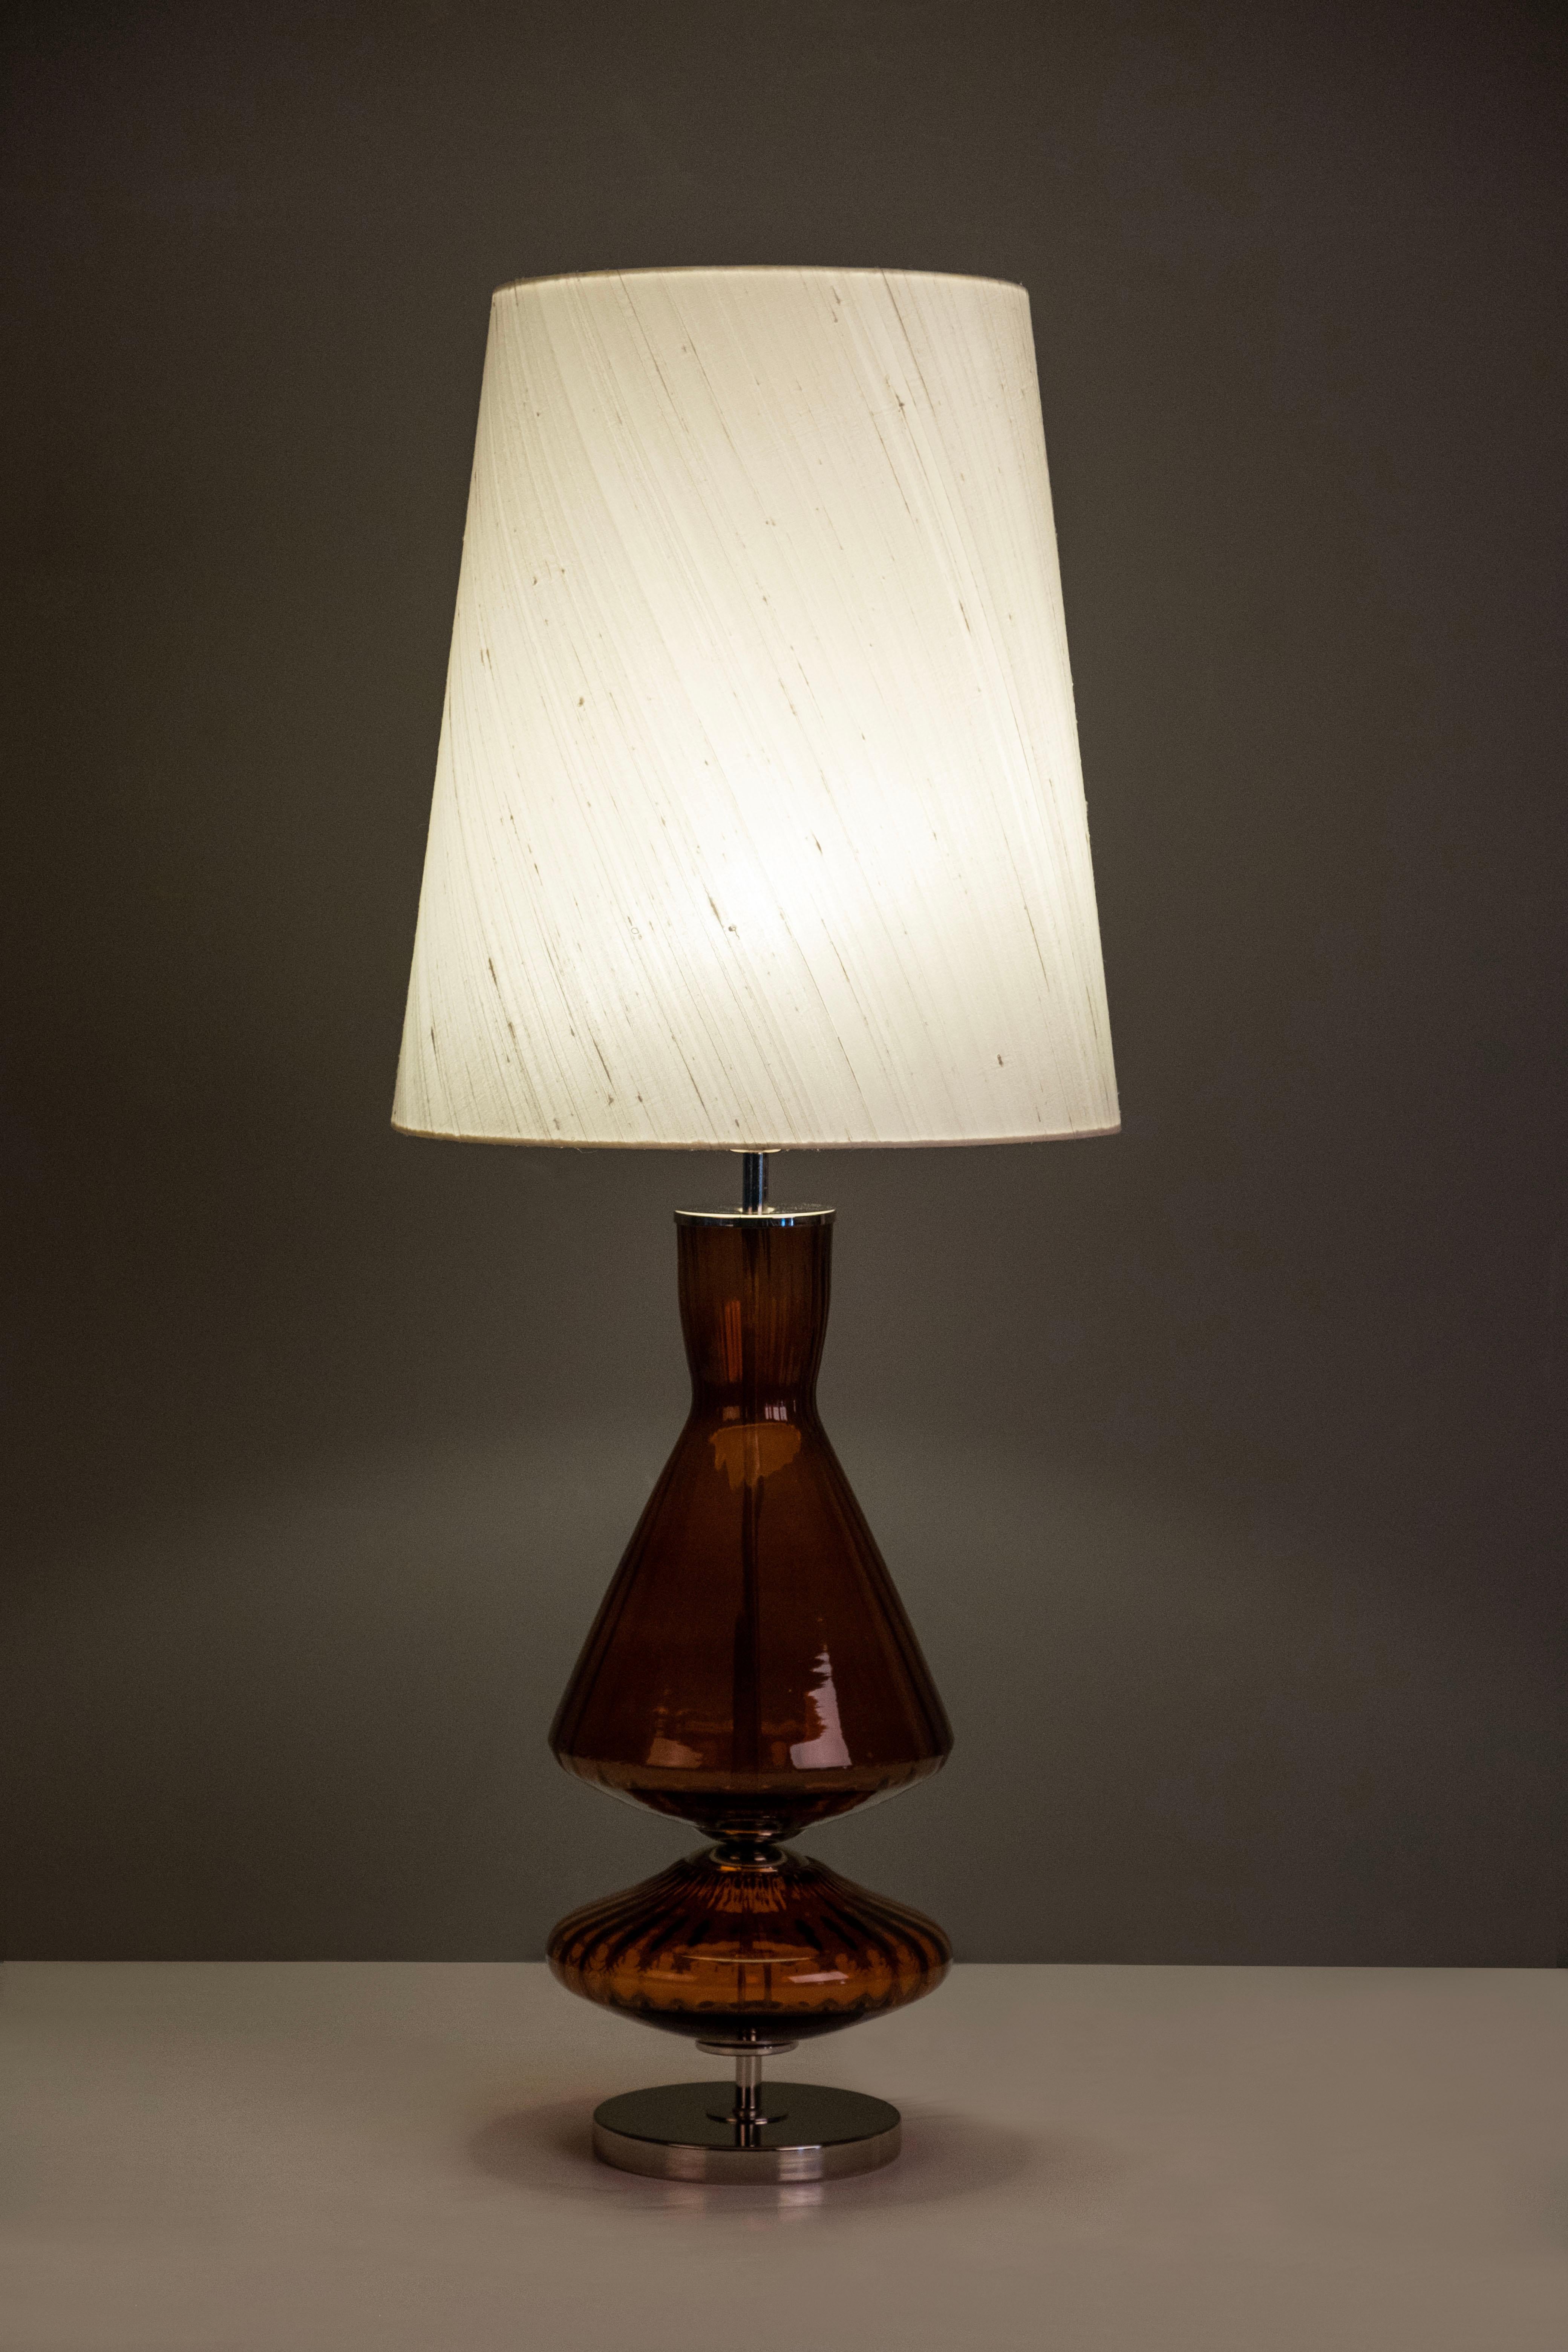 Lot de 2 lampes de table Assis, Collection S, fabriquées à la main au Portugal - Europe par GF Modern.

Assis est une lampe de table élégante et un complément attrayant pour une maison moderne. Le verre Ambar et l'acier inoxydable poli se